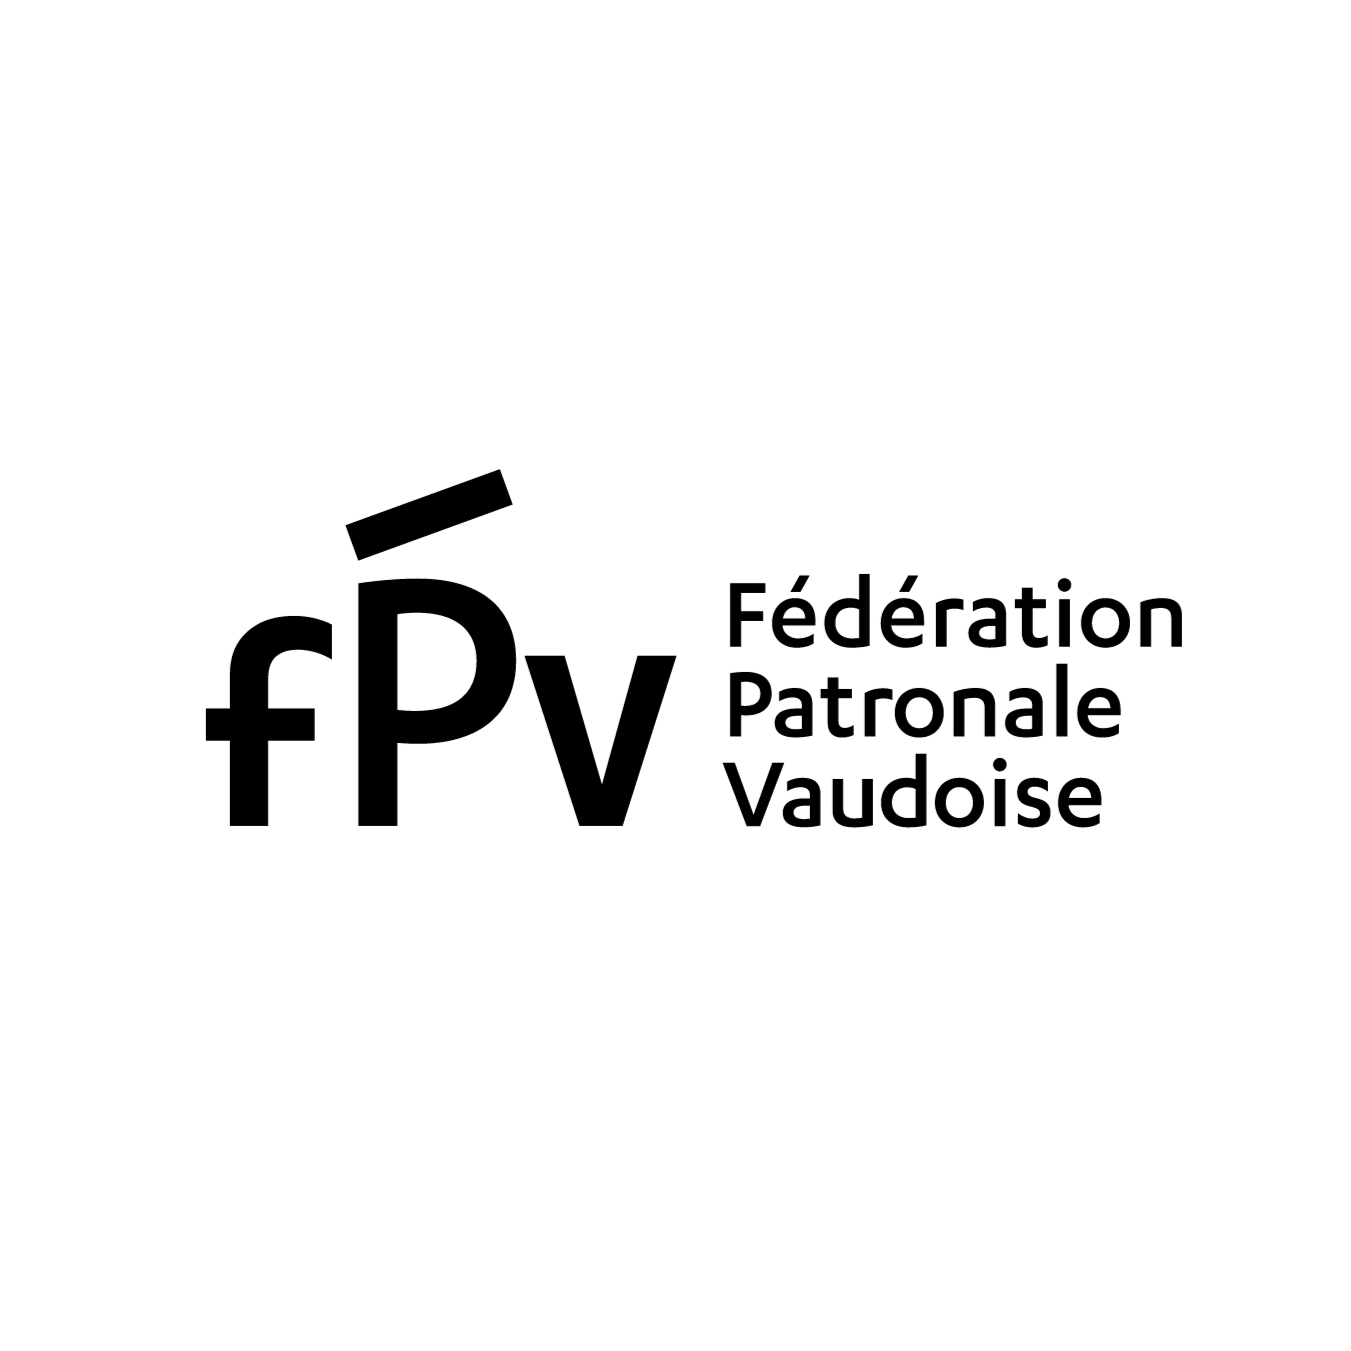 FPV_logo_plus petit que 1.5 cm_noir.png (0.1 MB)